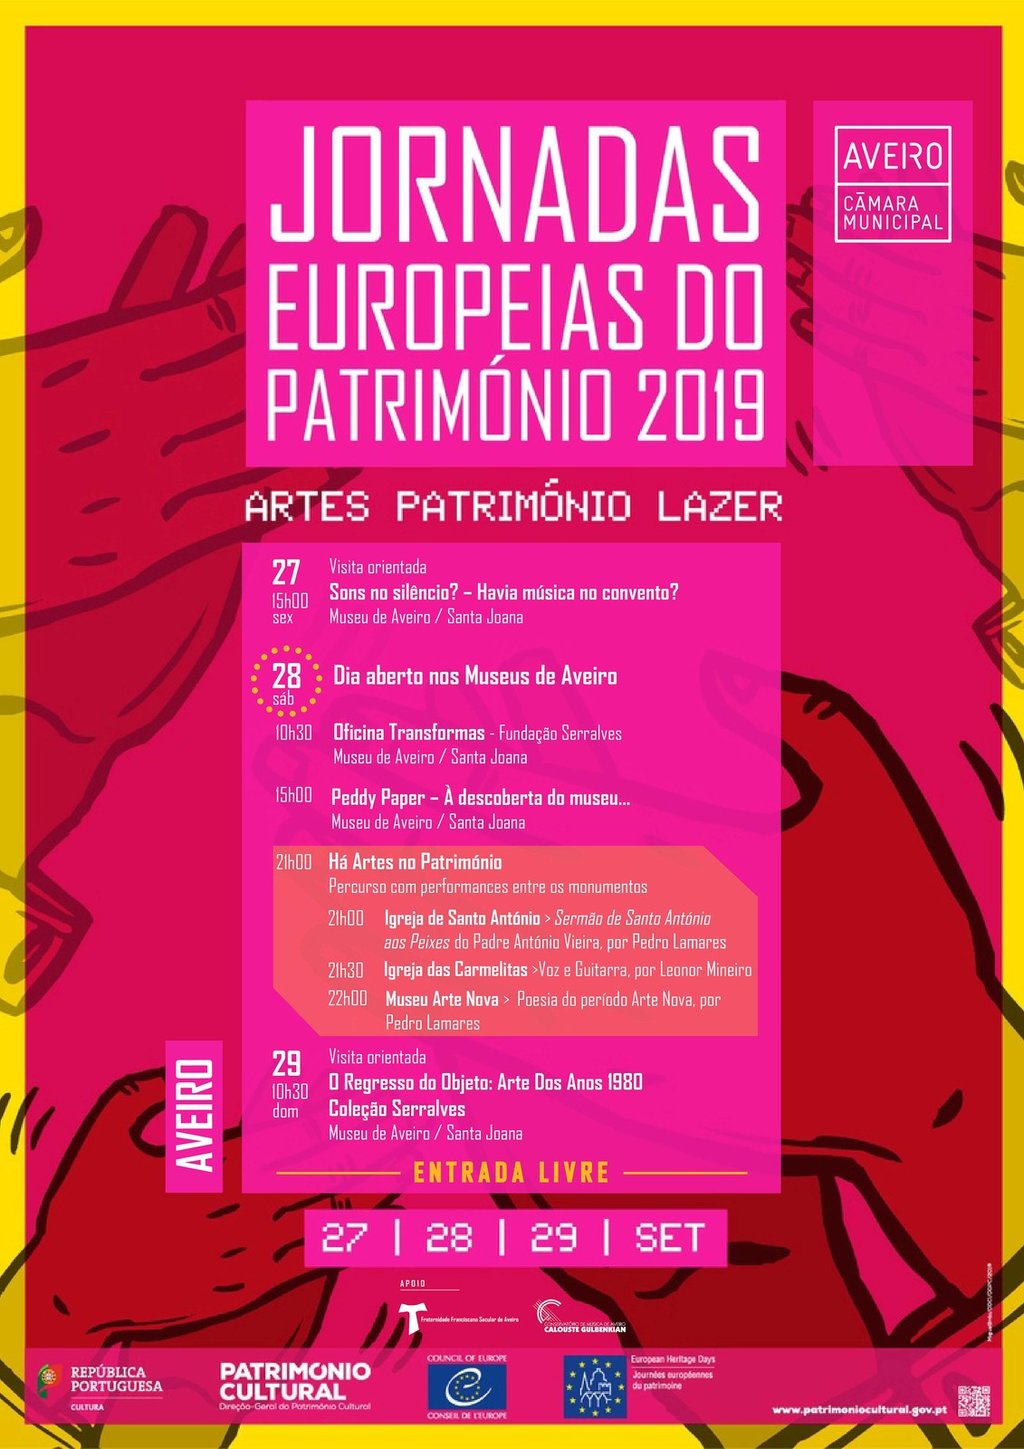 JORNADAS EUROPEIAS DO PATRIMÓNIO 2019 